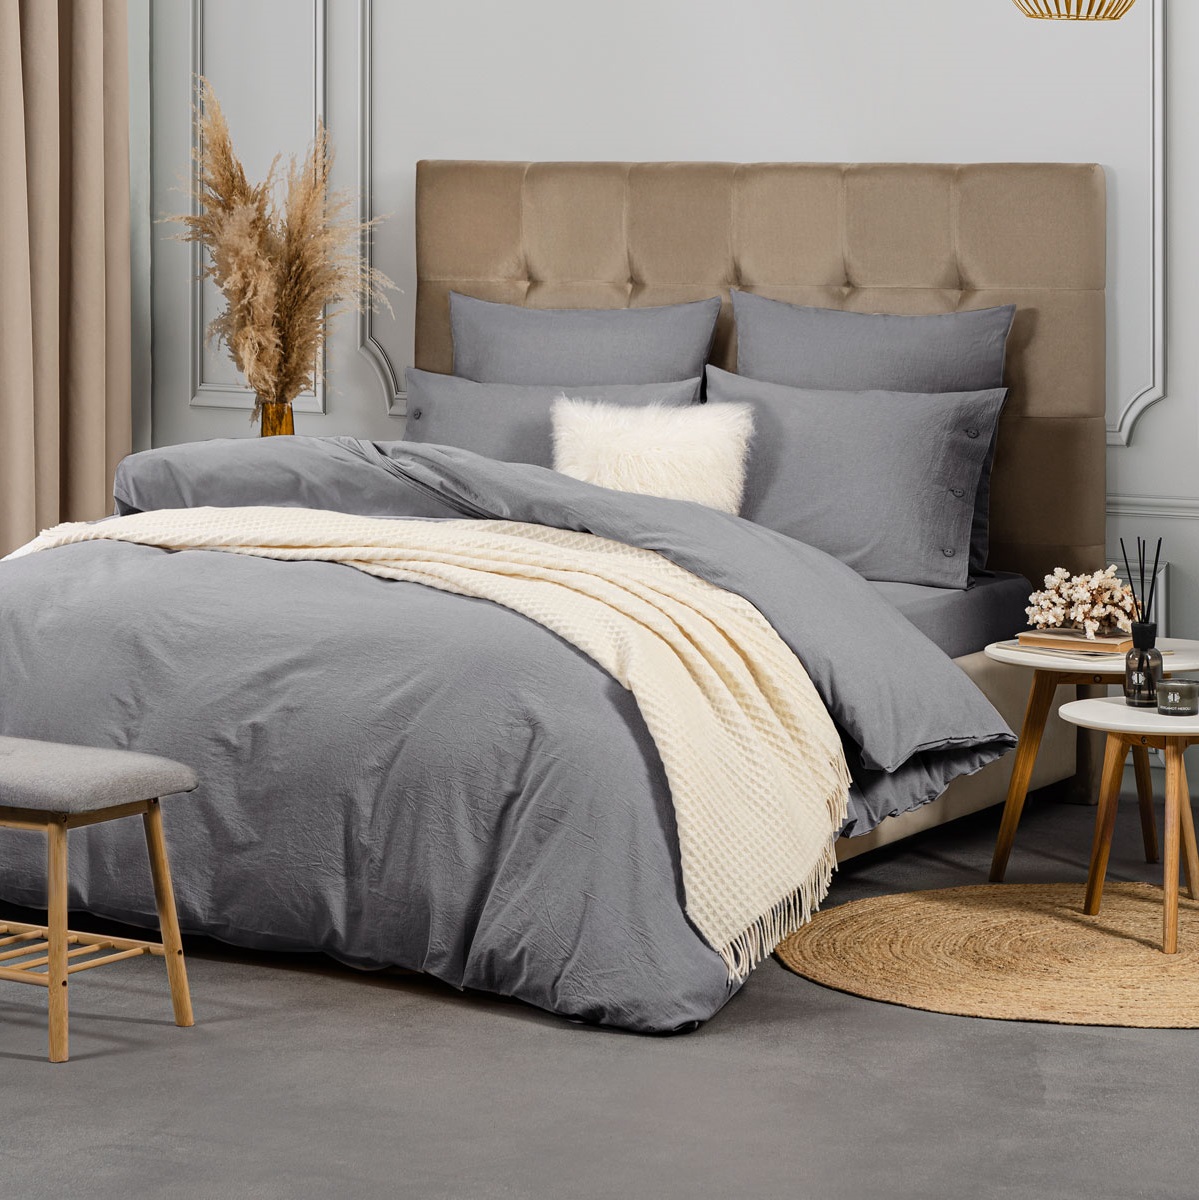 Комплект постельного белья Prime Prive Смоген Двуспальный кинг сайз тёмно-серый, размер Кинг сайз - фото 2